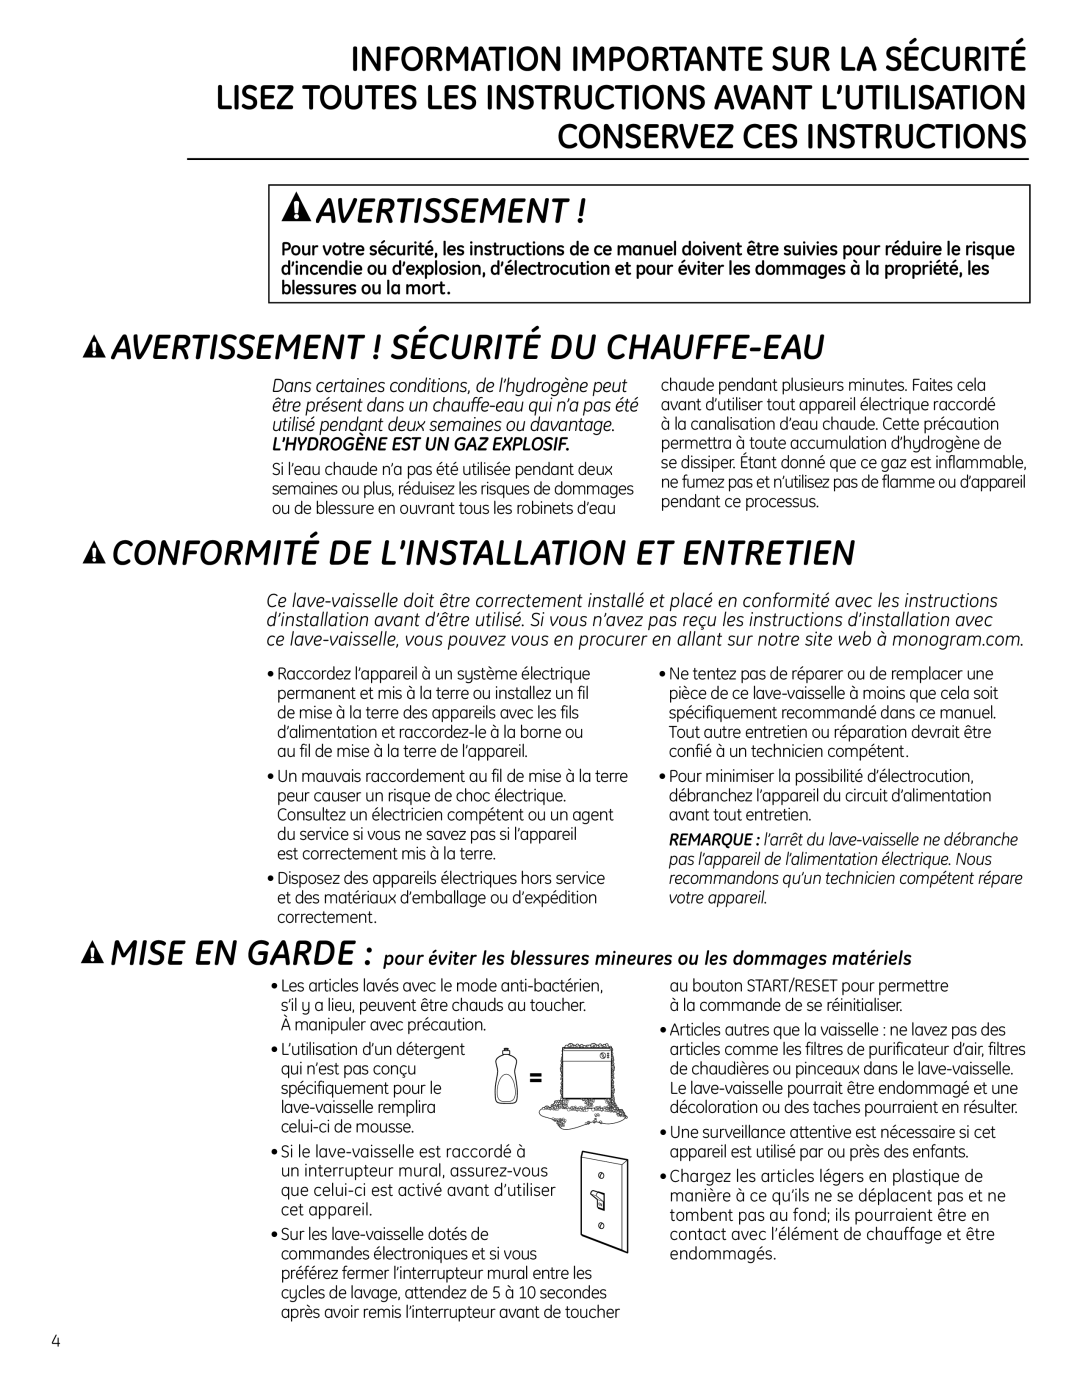 GE Monogram ZBD0710 owner manual Avertissement ! Sécurité Du Chauffe-Eau, Conformité De L’Installation Et Entretien 